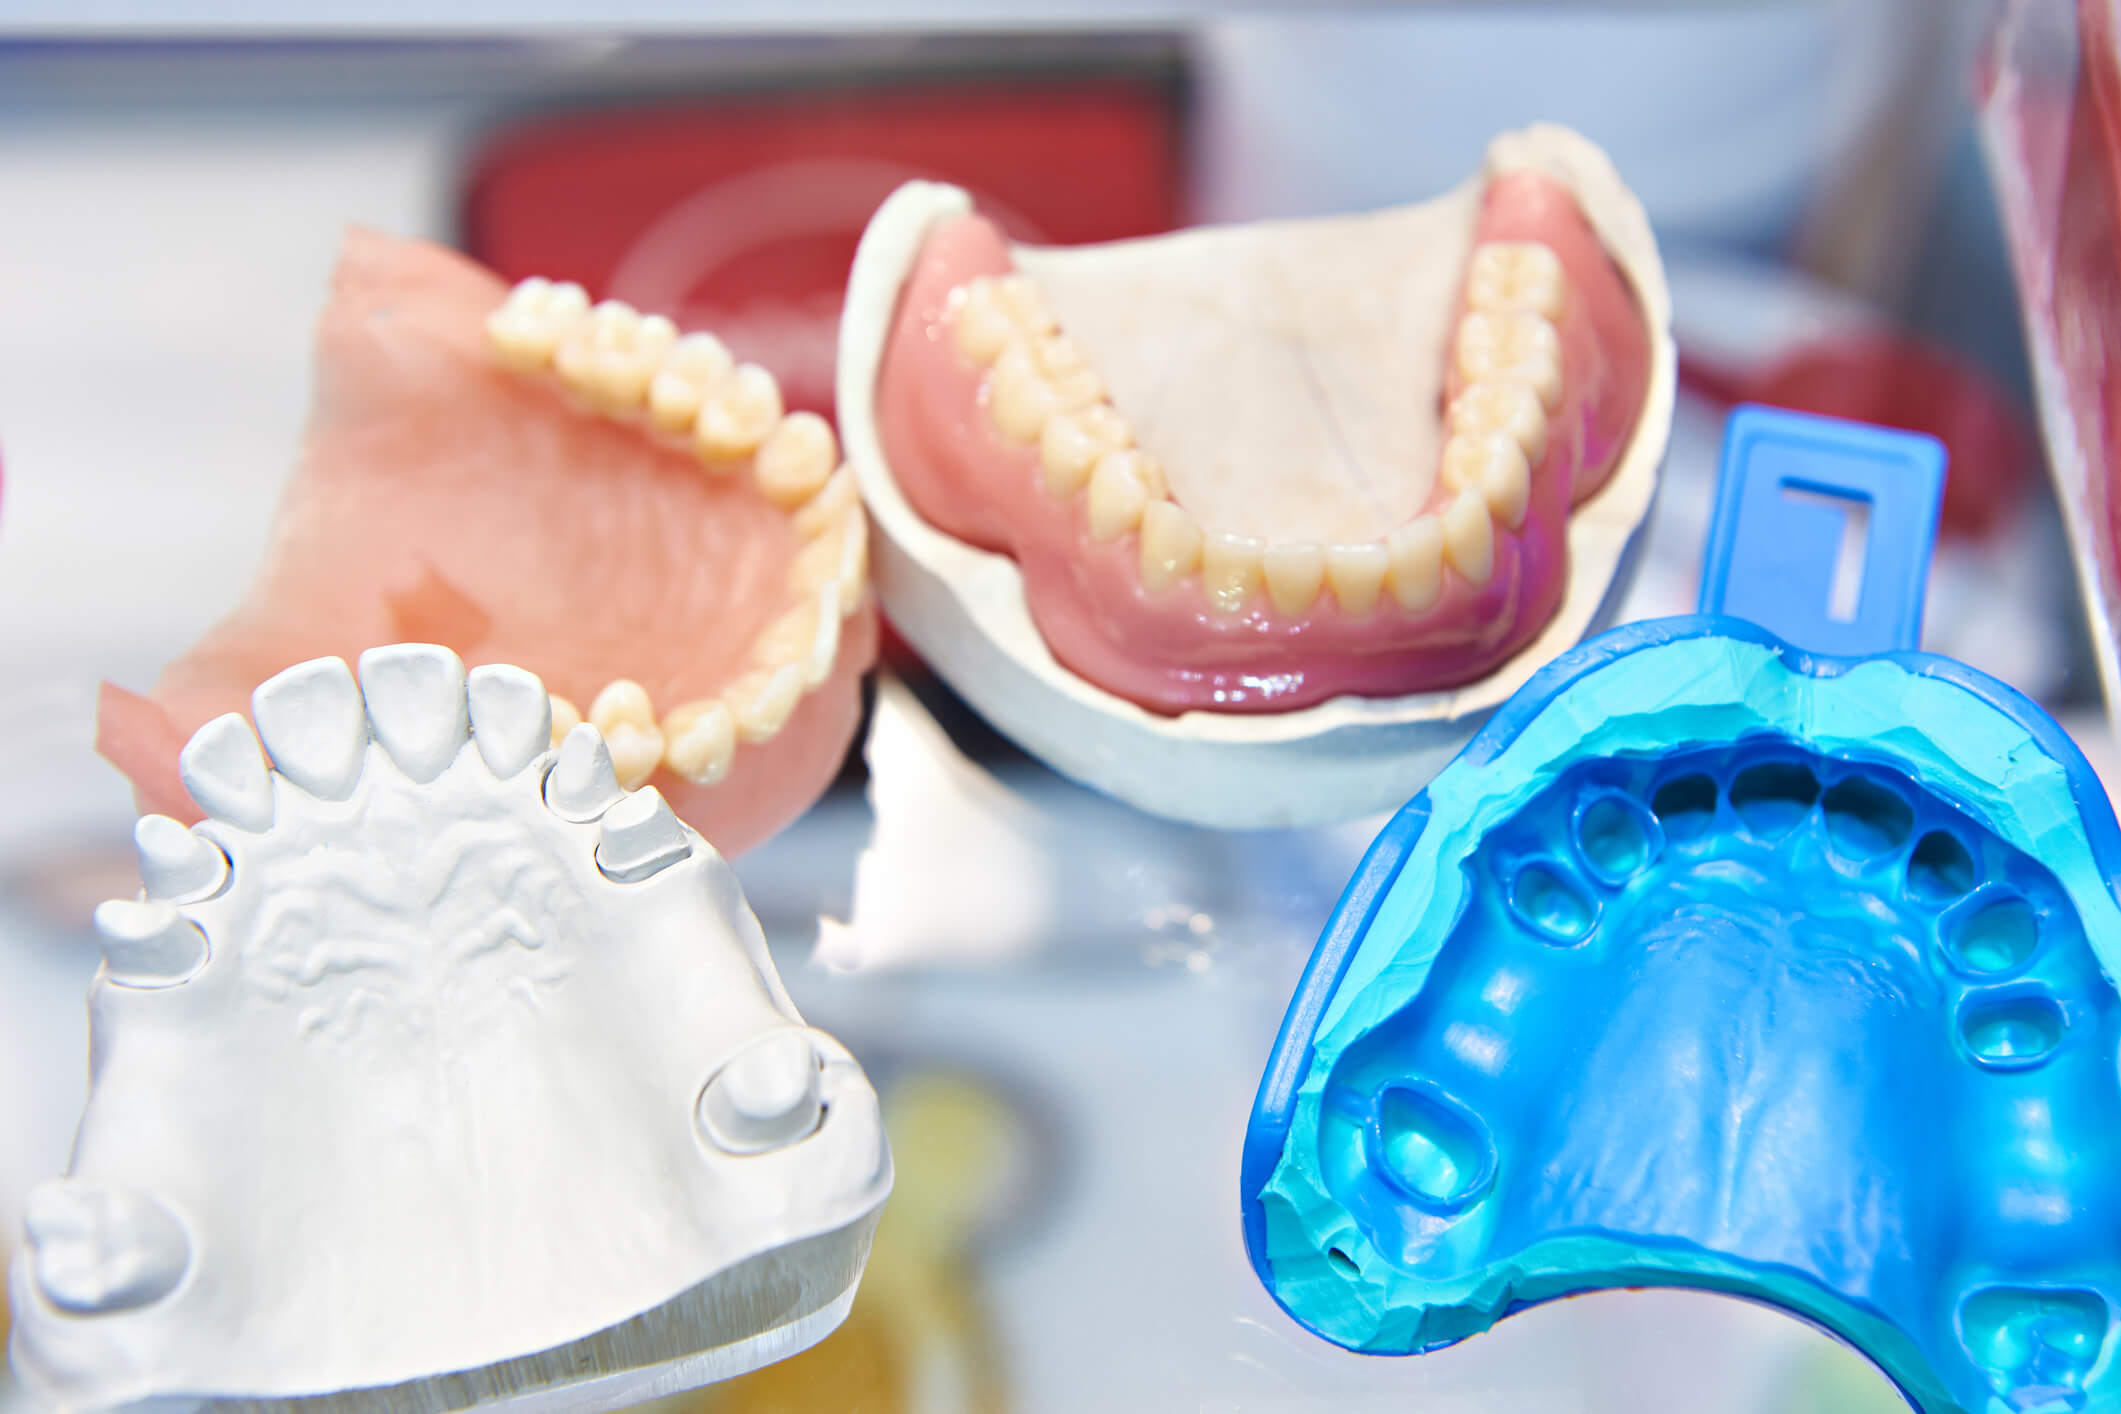 sample dentures on display